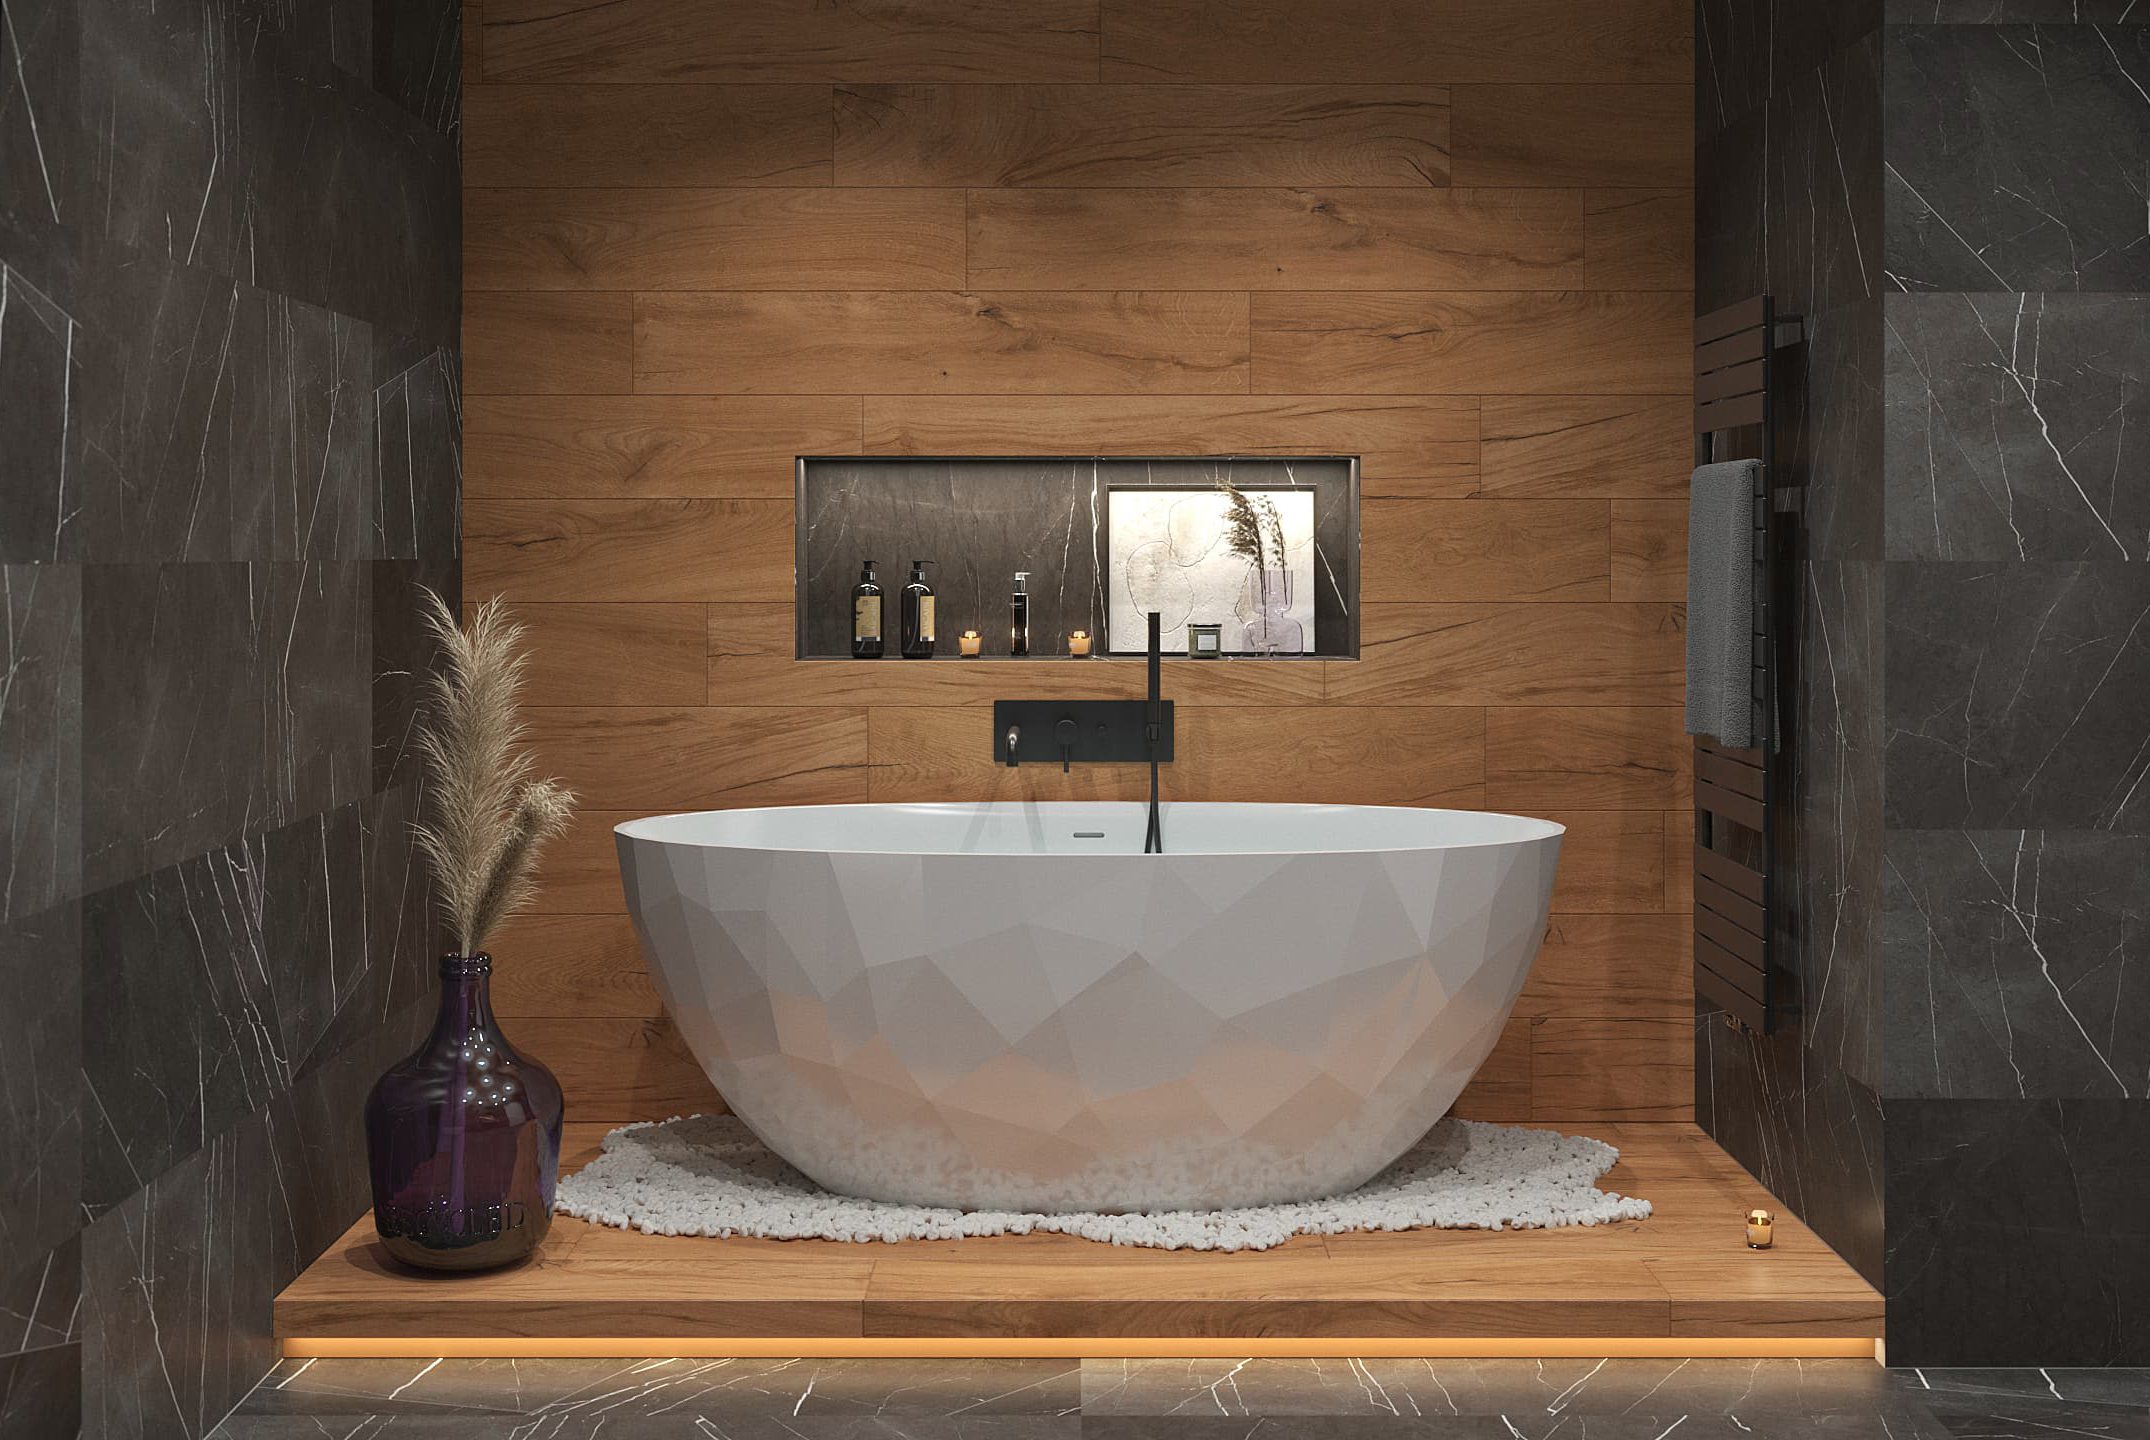 SIKO Volně stojící vana s originálním povrchem, dřevěná podlaha a dřevěný obklad, kamenný obklad, nika v koupelně, černá vanová baterie